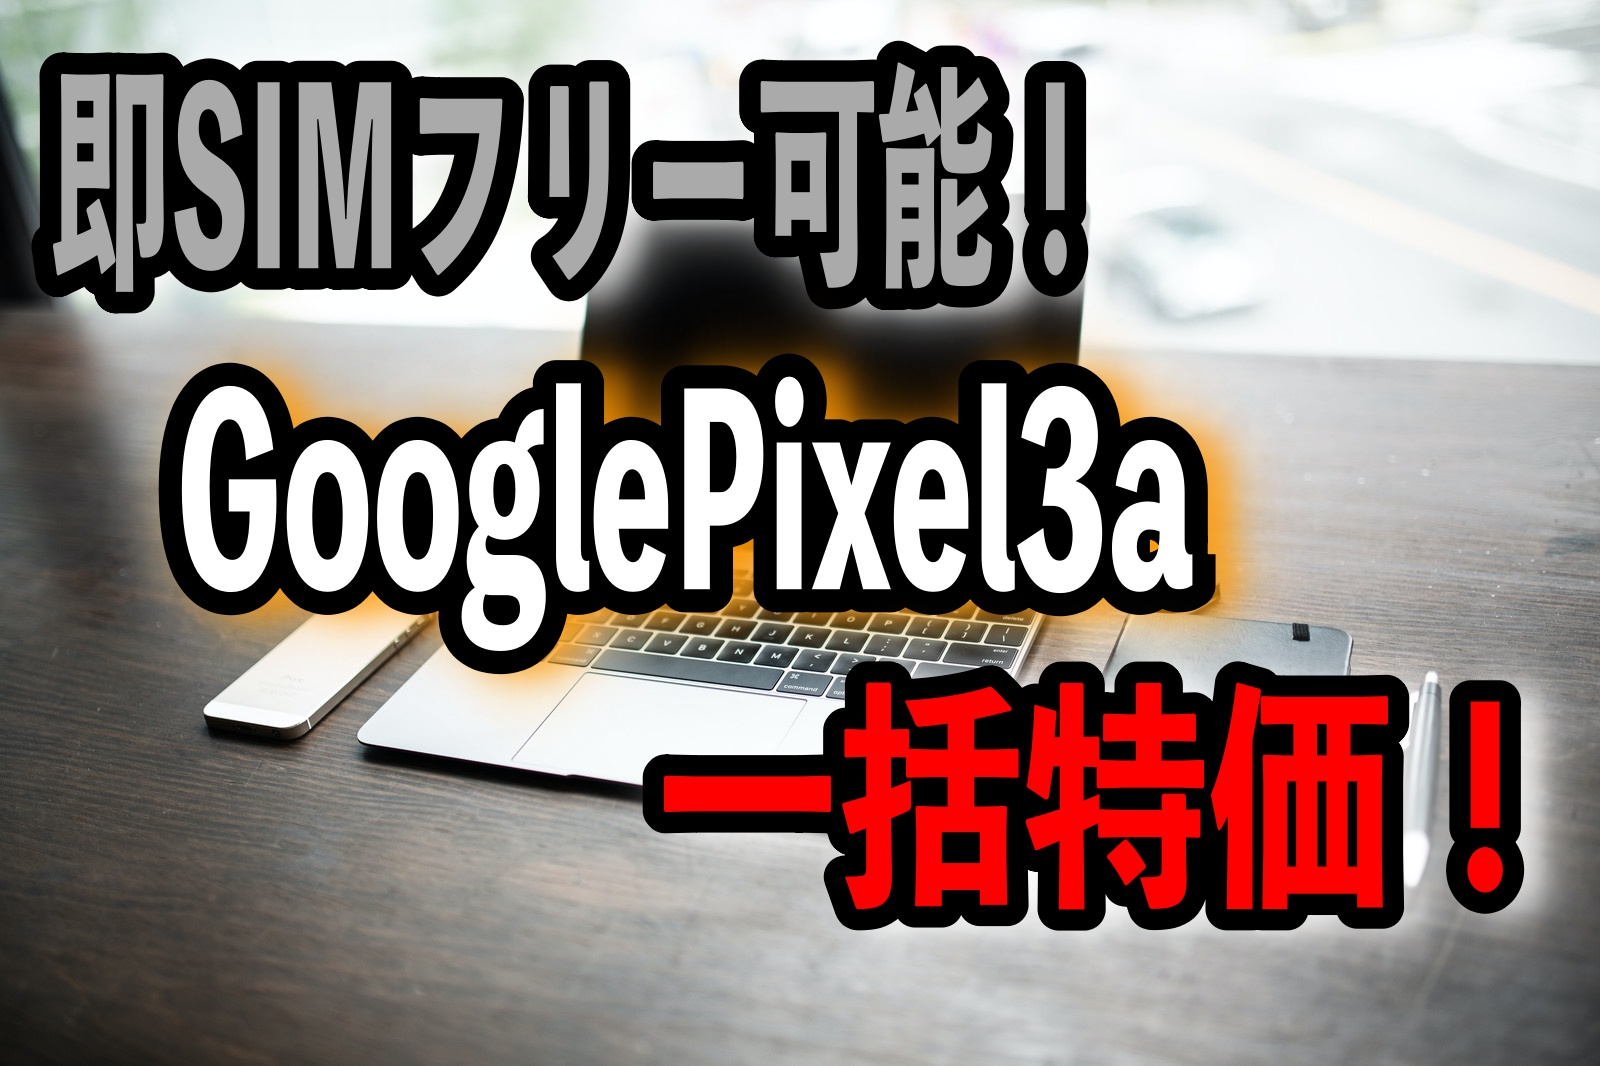 即SIMフリー可能！GooglePixel3a一括特価！